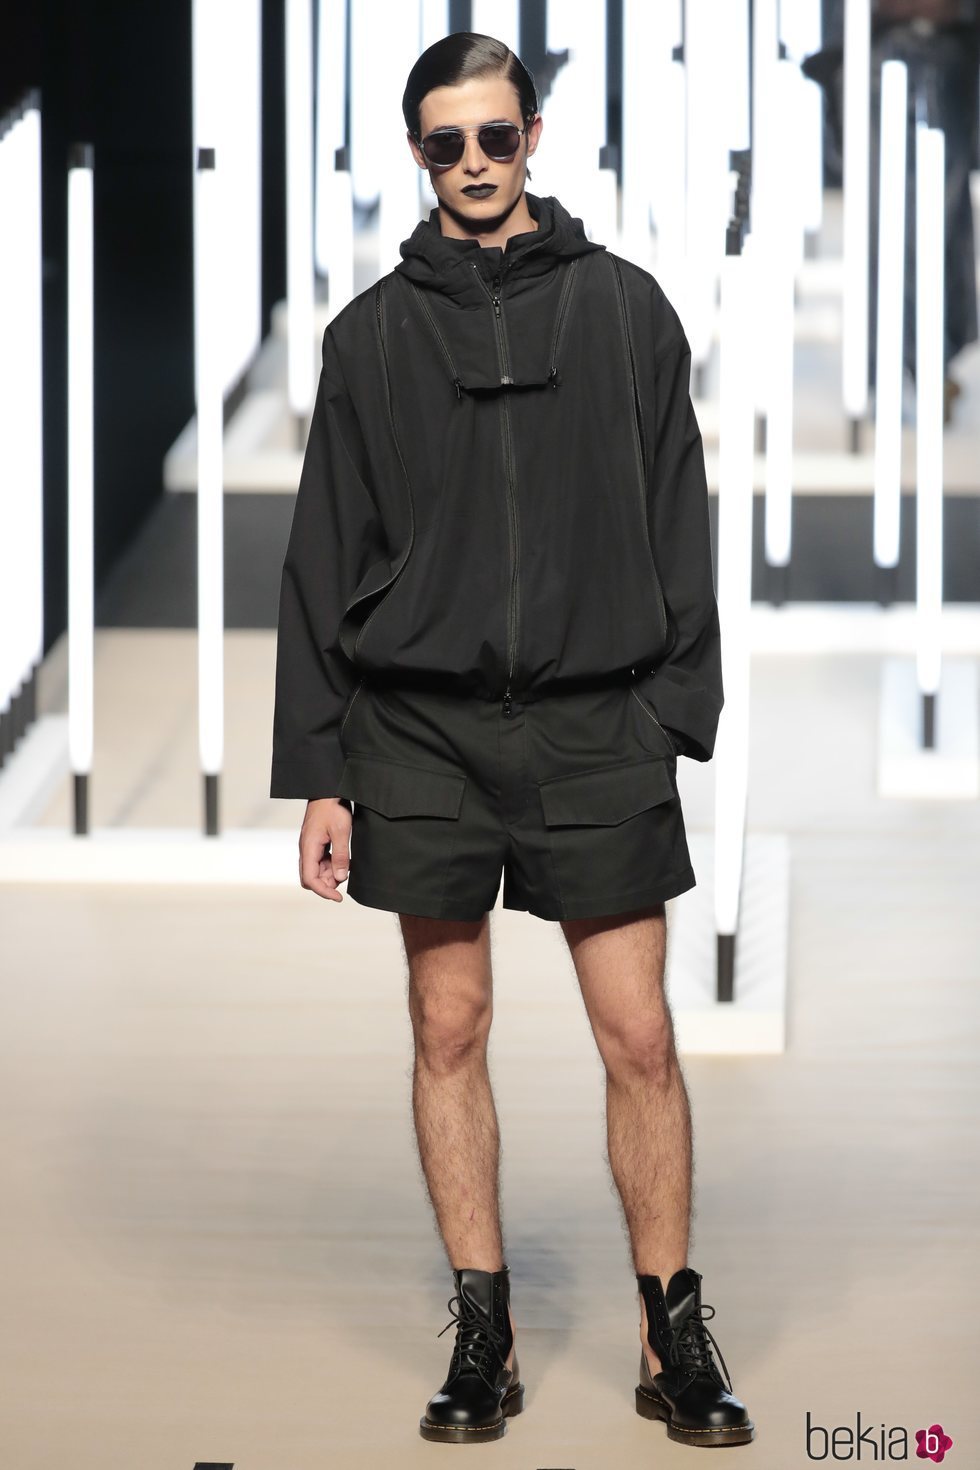 Pantalón corto y chaqueta de Juanjo Oliva primavera/verano 2019 en la Madrid Fashion Week